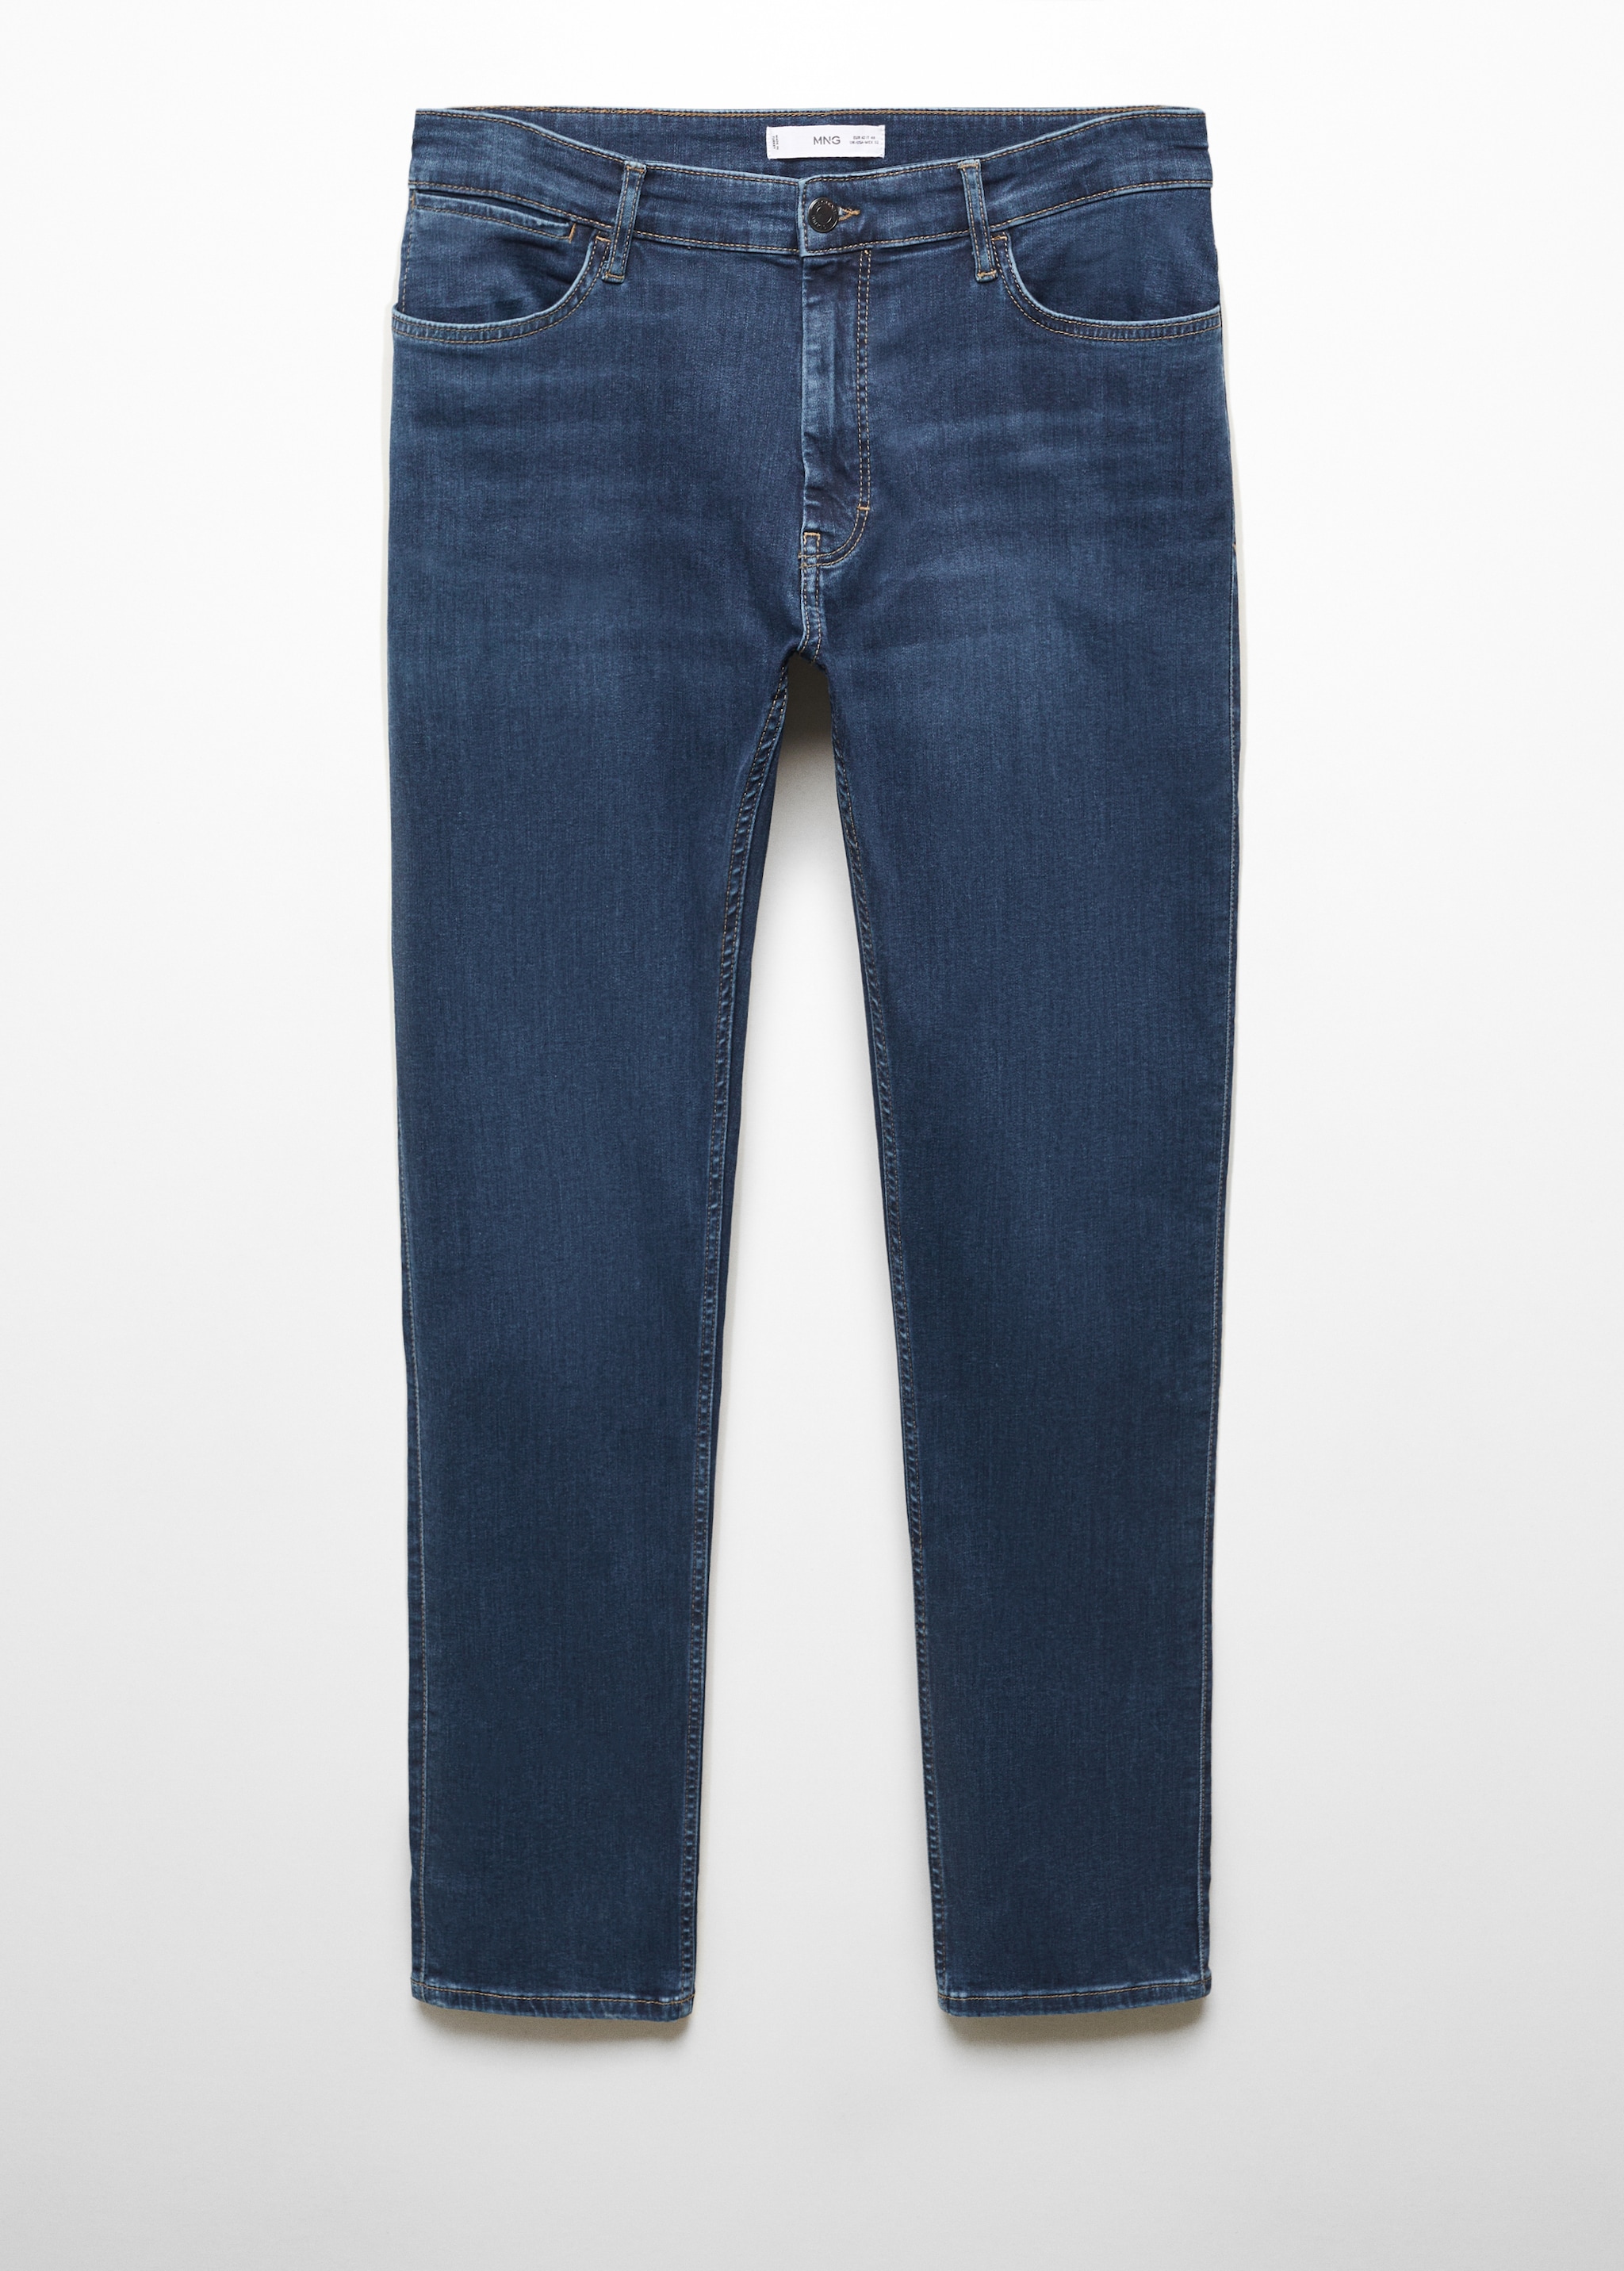 Jeans Patrick slim fit Ultra Soft Touch - Artigo sem modelo